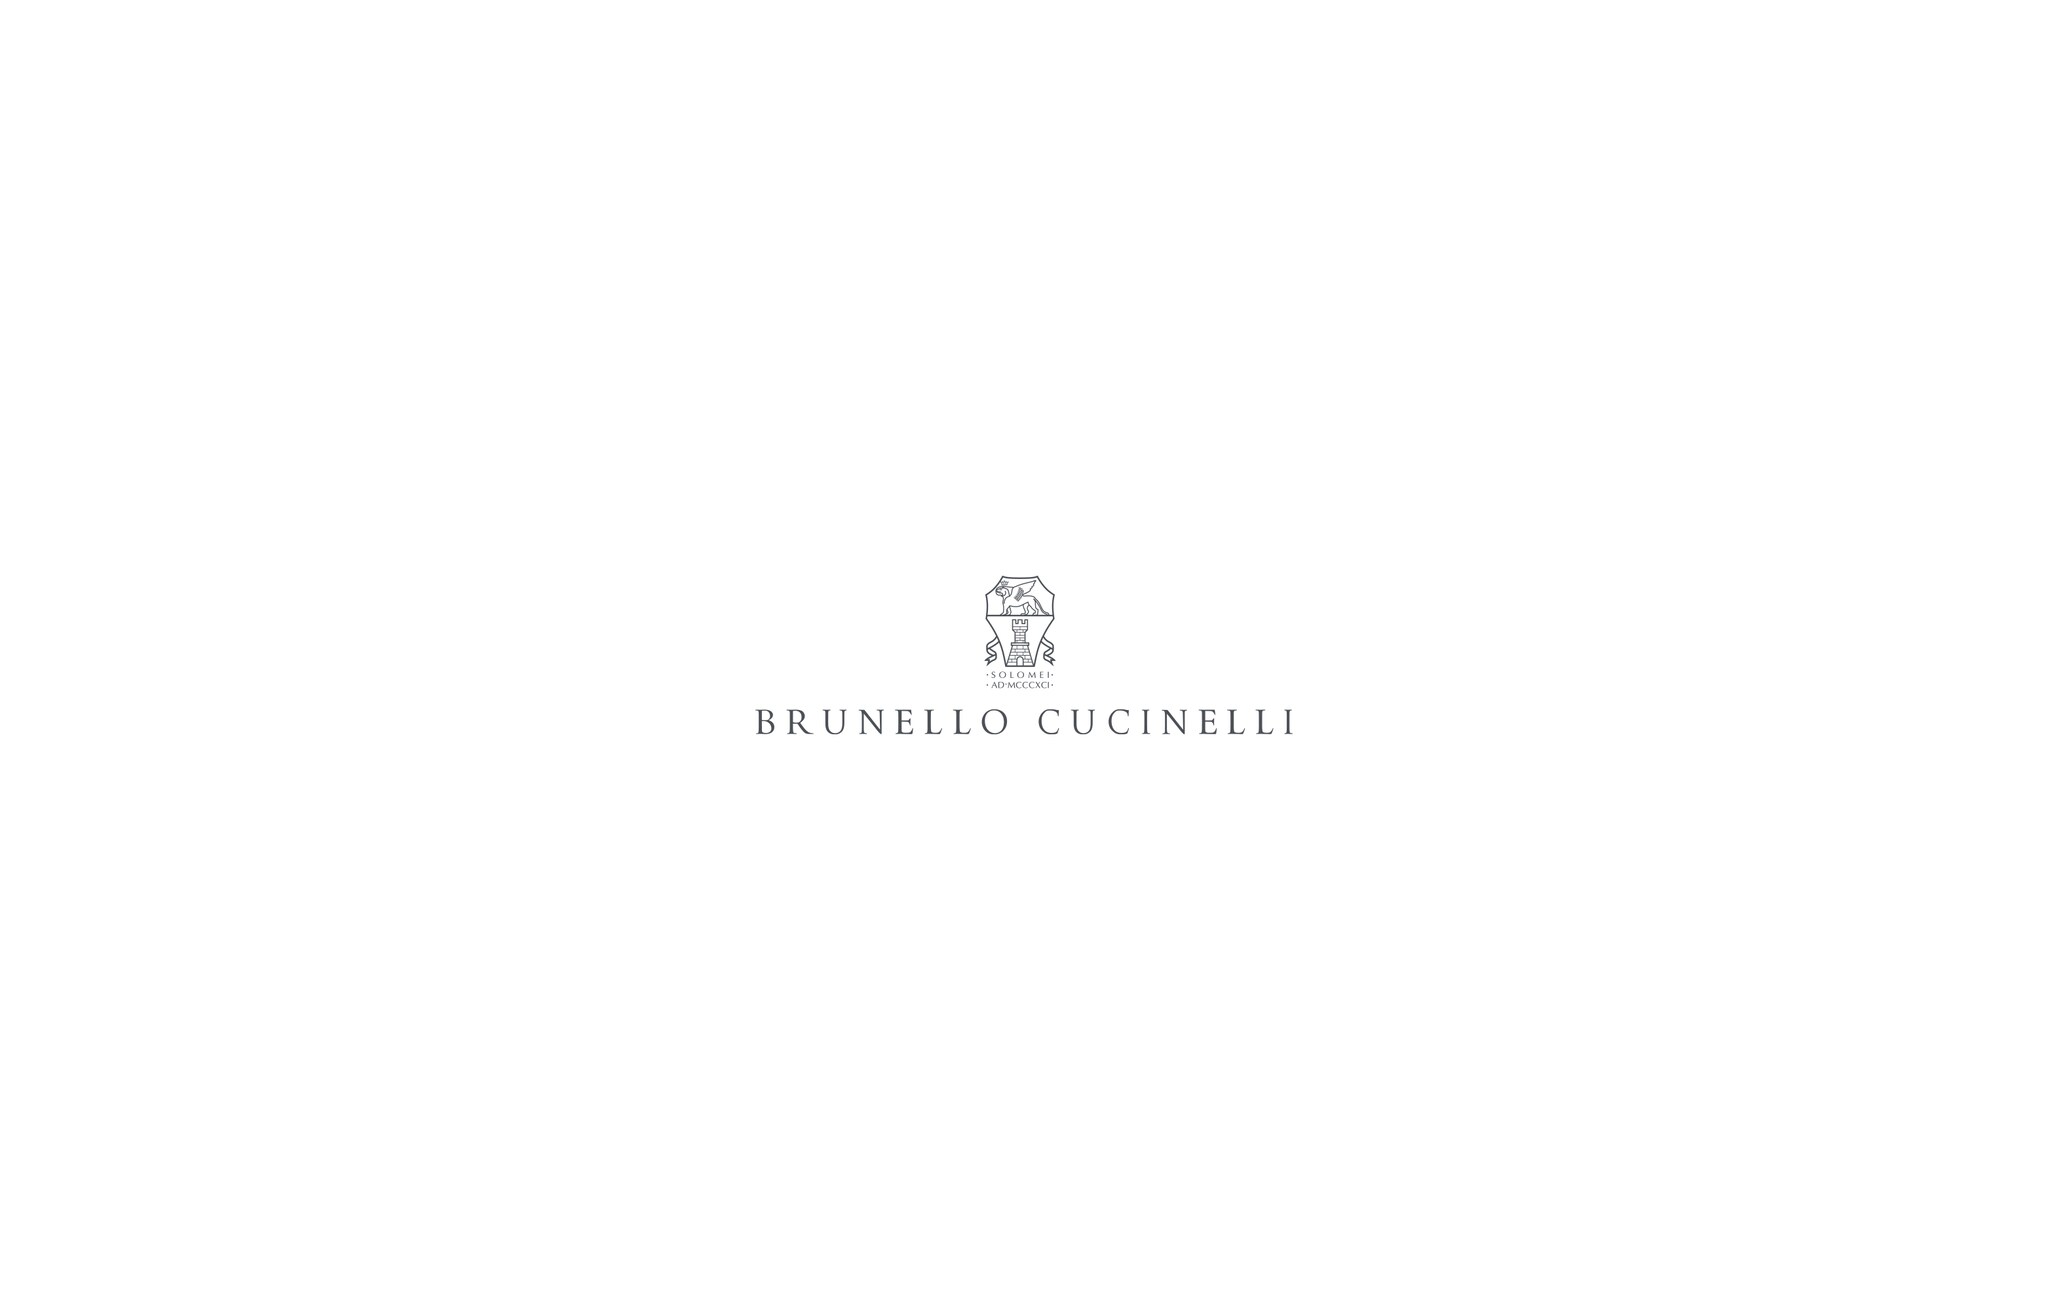  Chaqueta deconstruida Denim Hombre - Brunello Cucinelli 